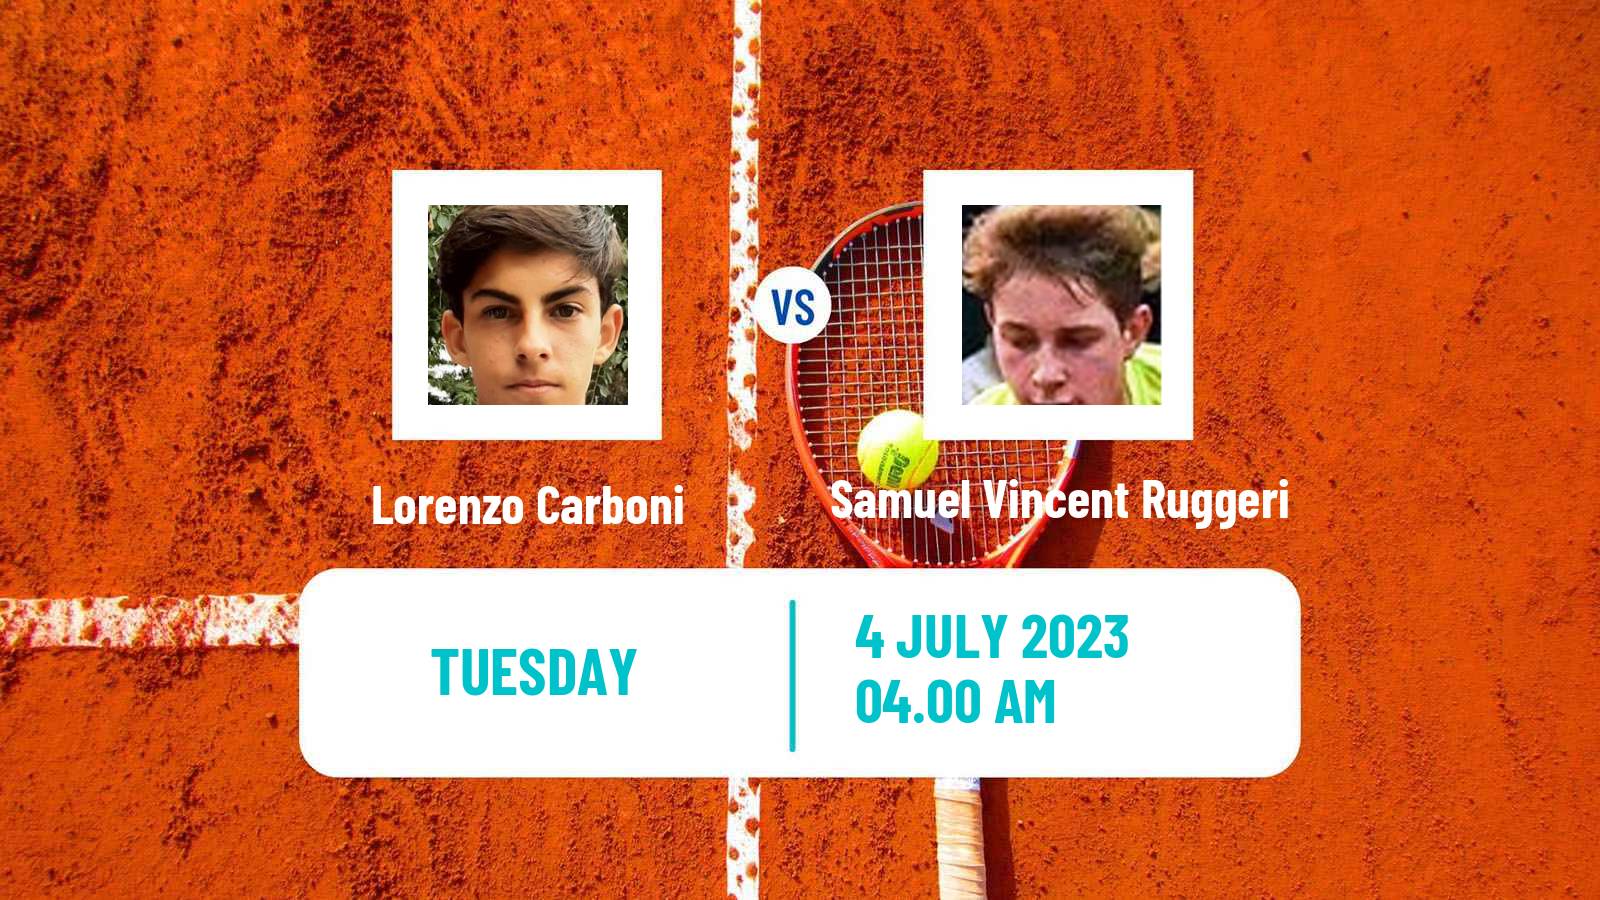 Tennis ITF M25 Biella Men Lorenzo Carboni - Samuel Vincent Ruggeri